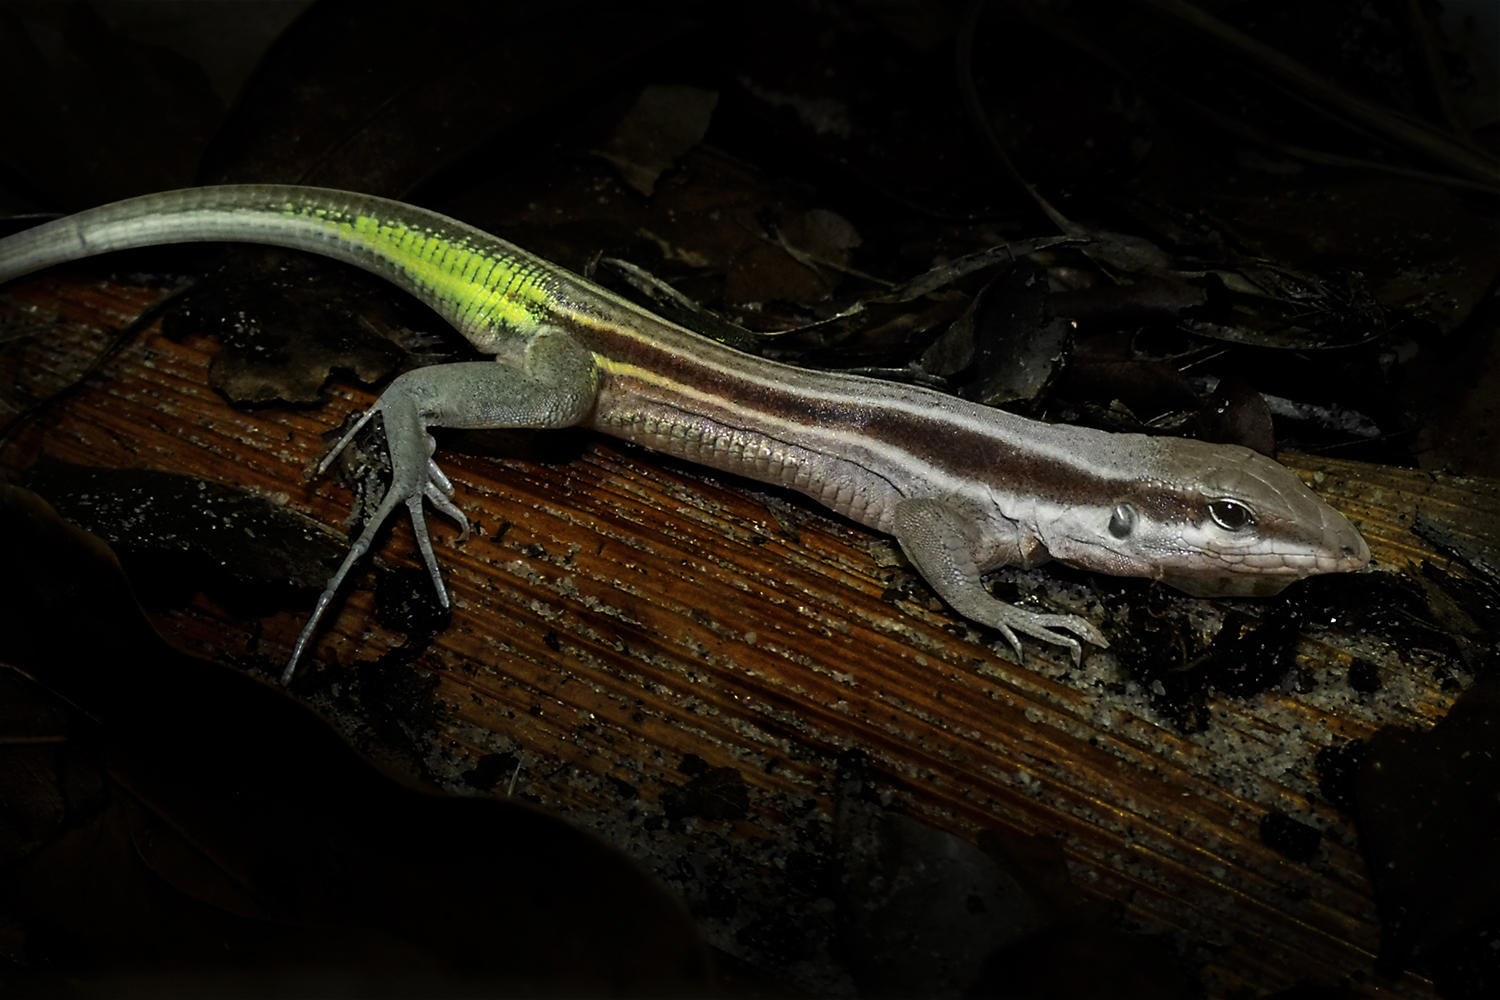 O nome 'Glaucomastix itabaianensis' é uma referência à Serra de Itabaiana, o habitat do lagarto descoberto (Foto: divulgação)